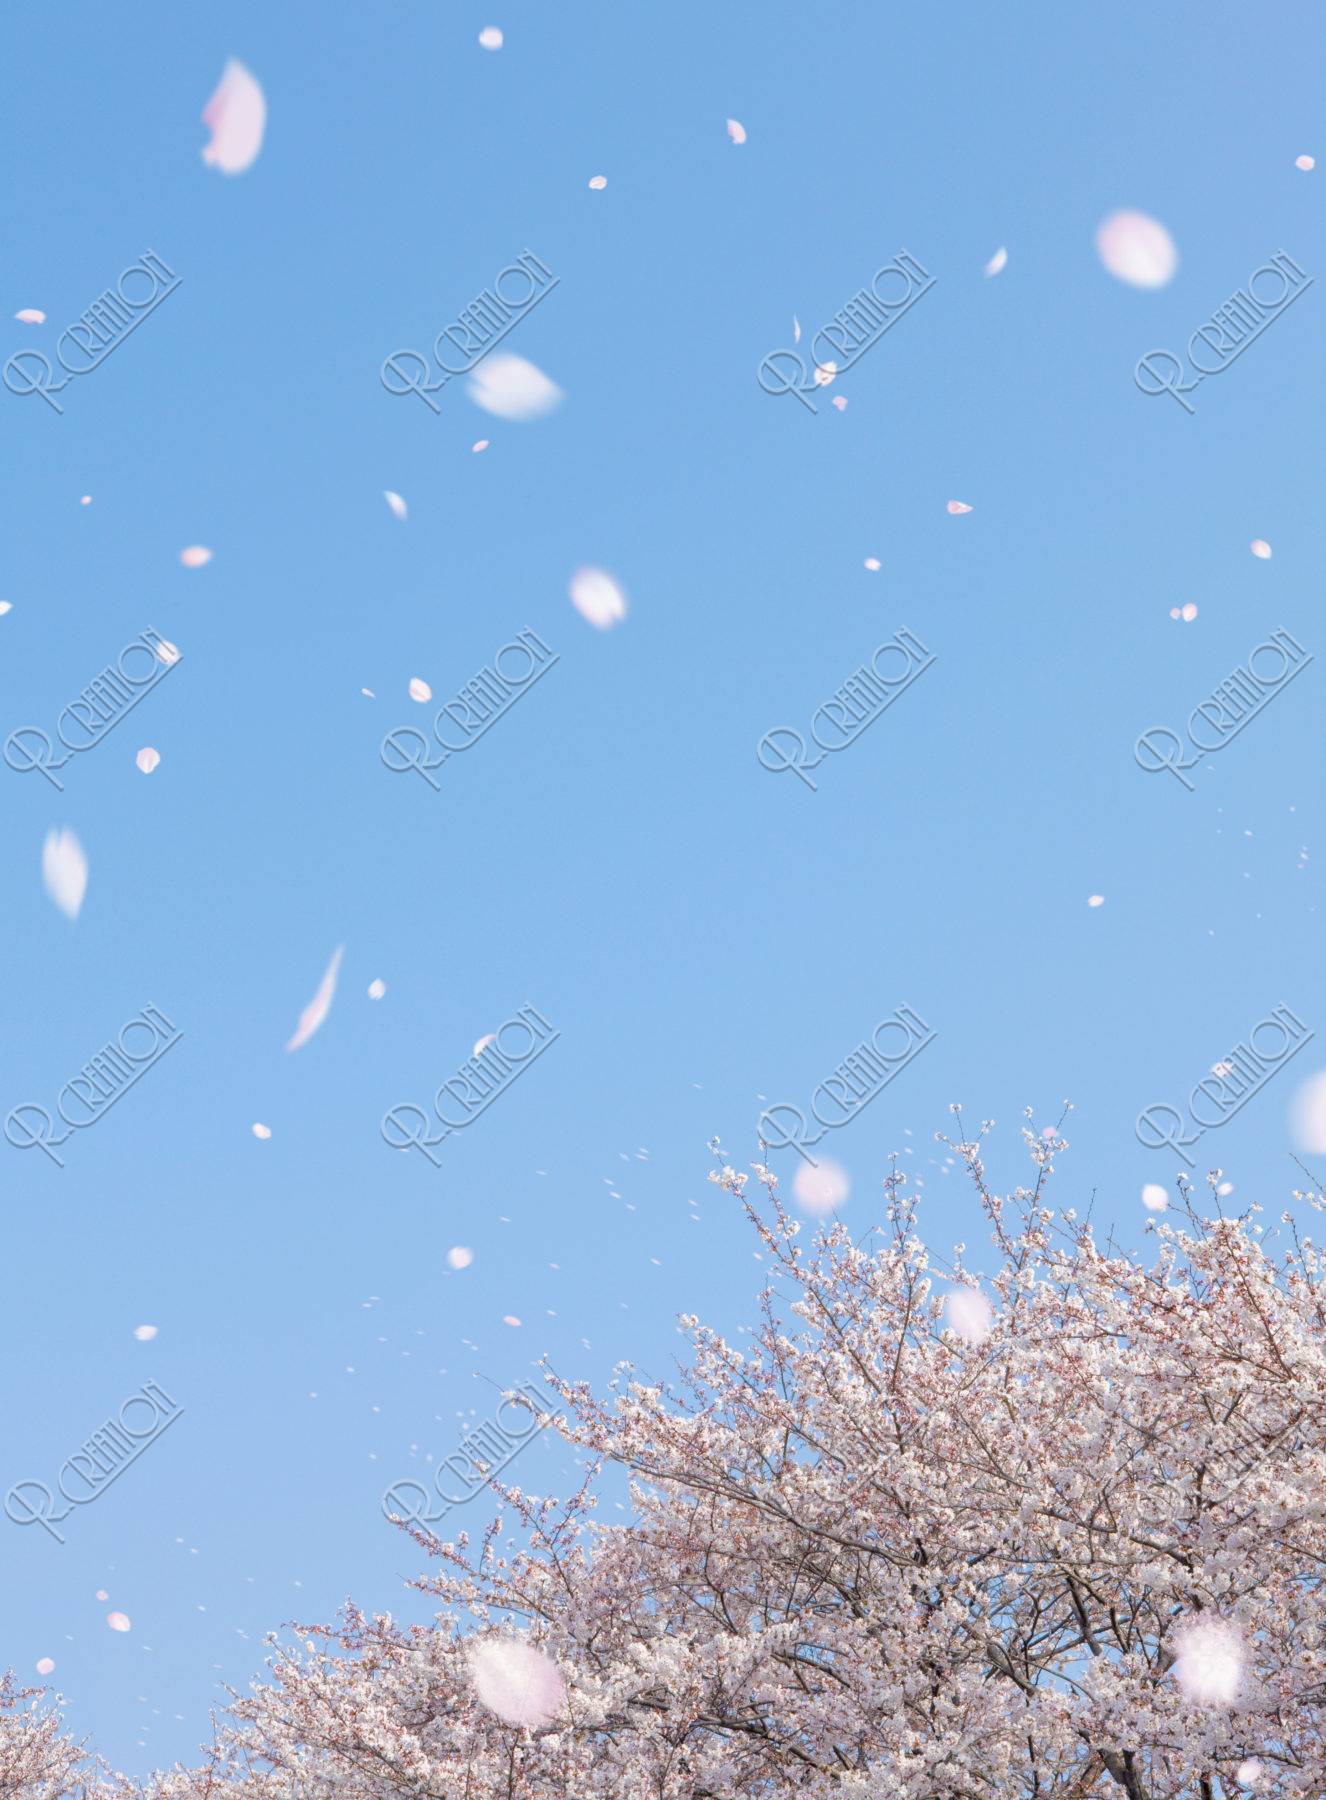 桜の木と花吹雪